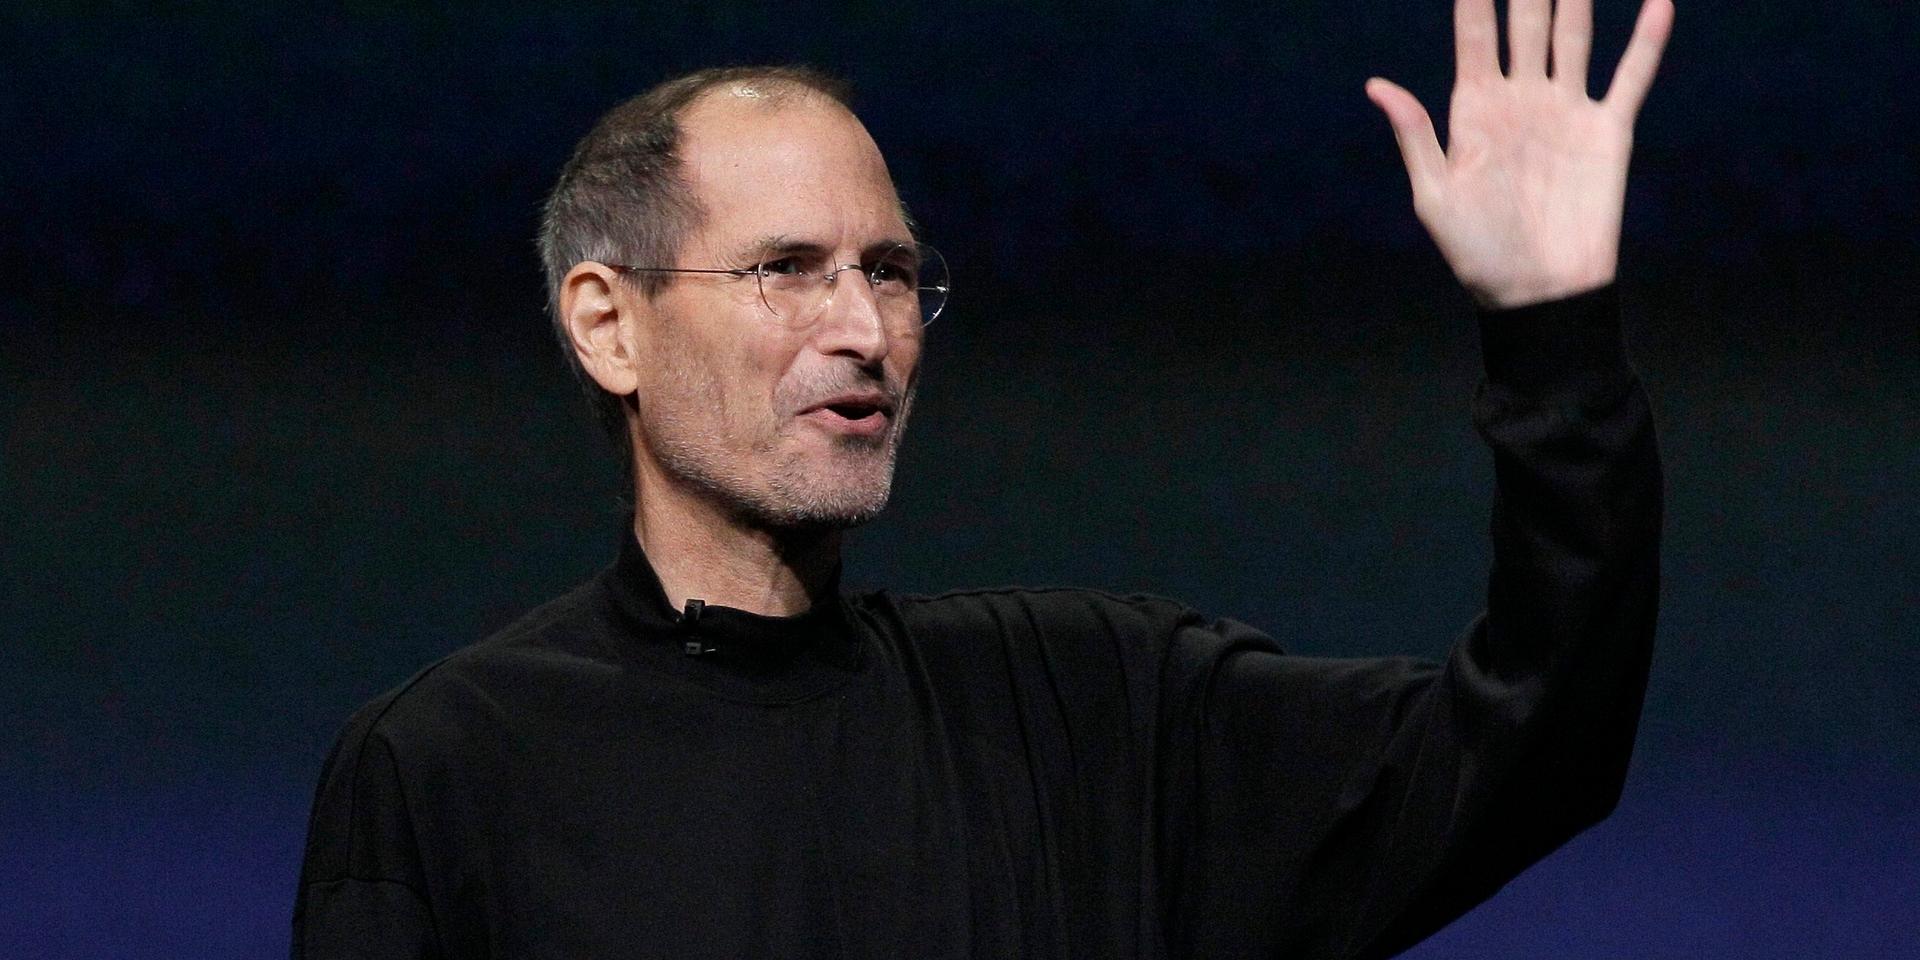 Steve Jobs blev Apple personifierad. Hans eftermäle är inte bara företaget och produkterna, han blev en förebild vars liv skildrats i böcker och spelfilmer. Arkivbild från mars 2011.